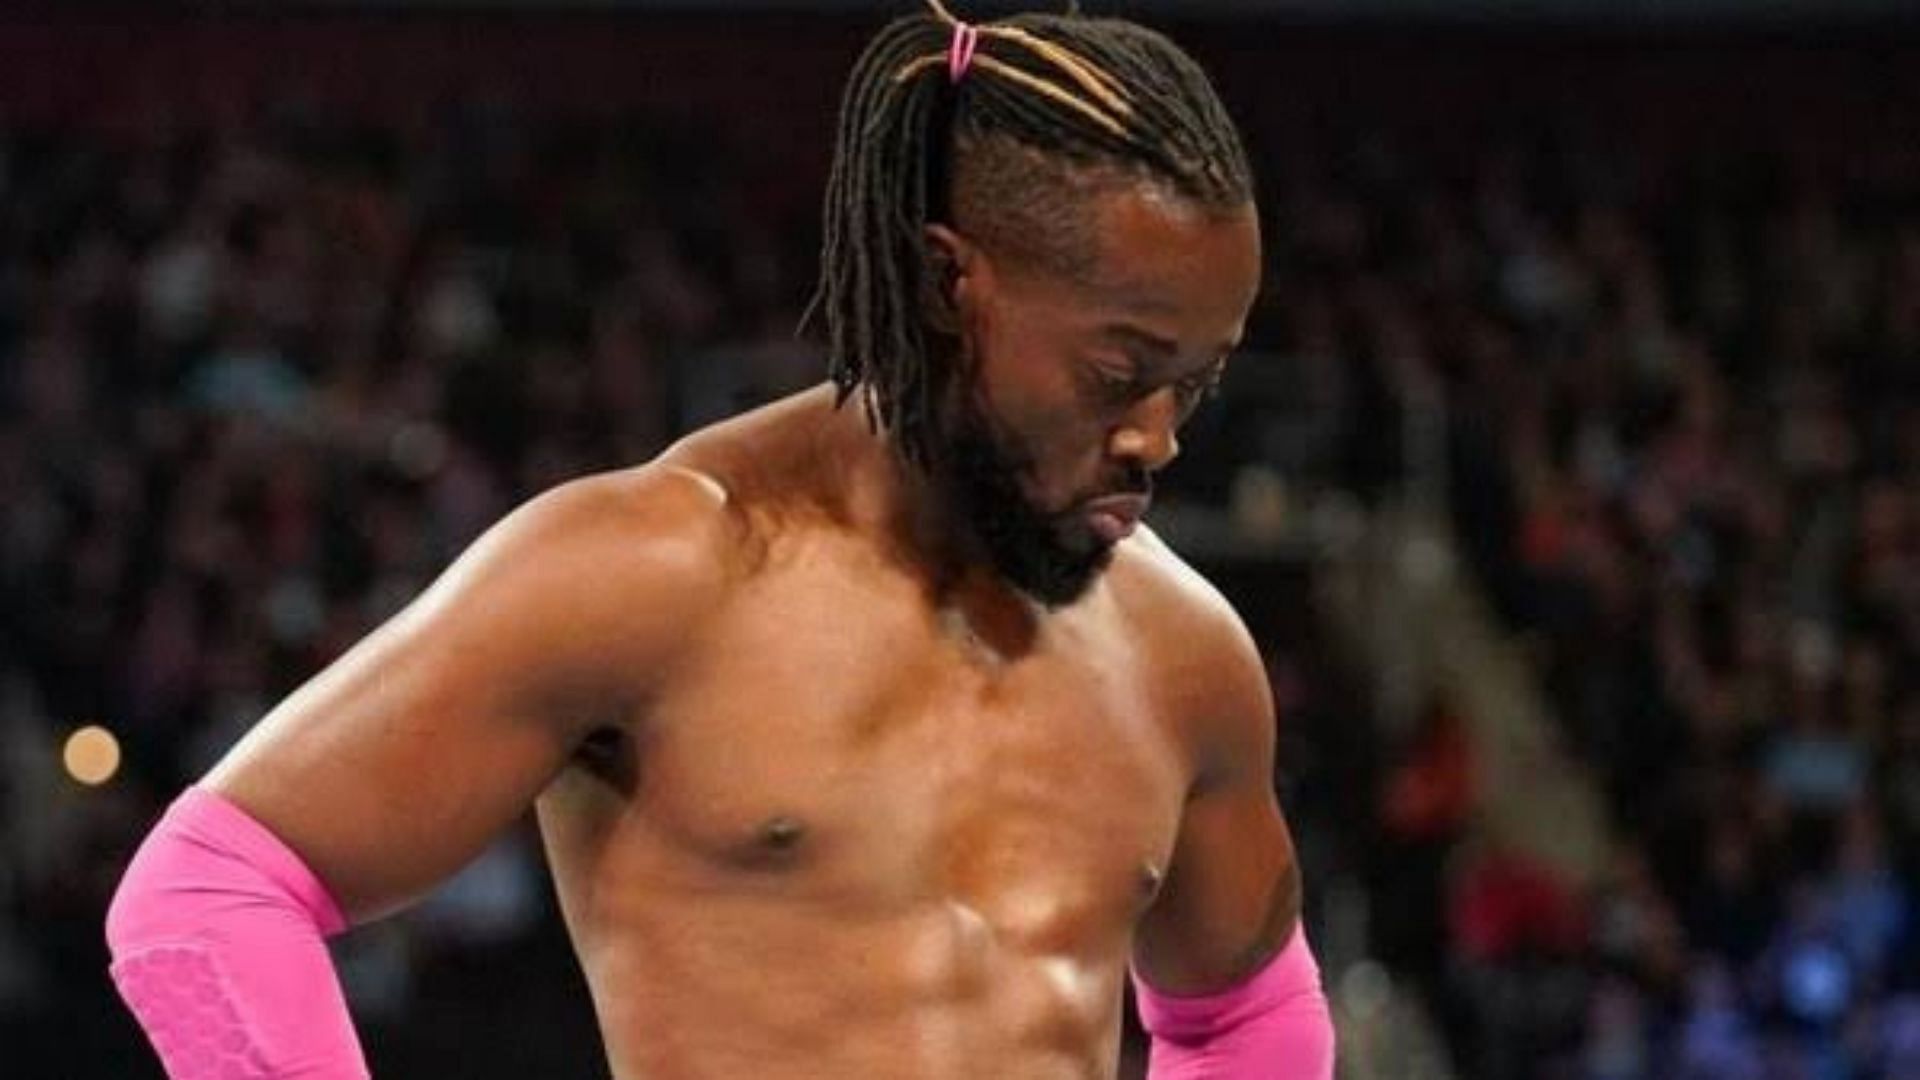 Kofi Kingston had a disappointing outing at the 2022 Royal Rumble